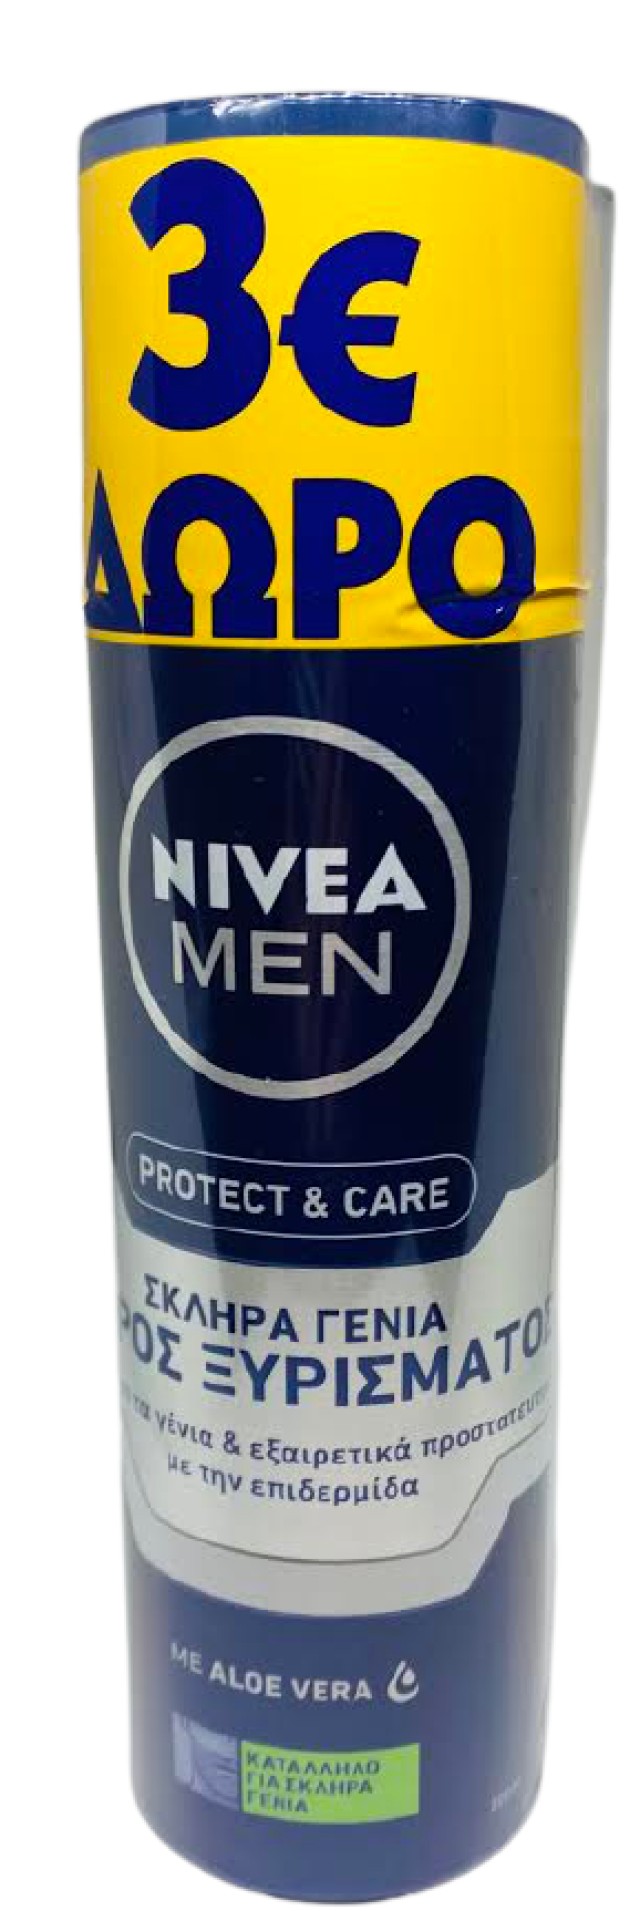 Nivea Men PROMO Protect Care Αφρός Ξυρίσματος με Aloe Vera 2x200ml -3€ Επί Της Τιμής